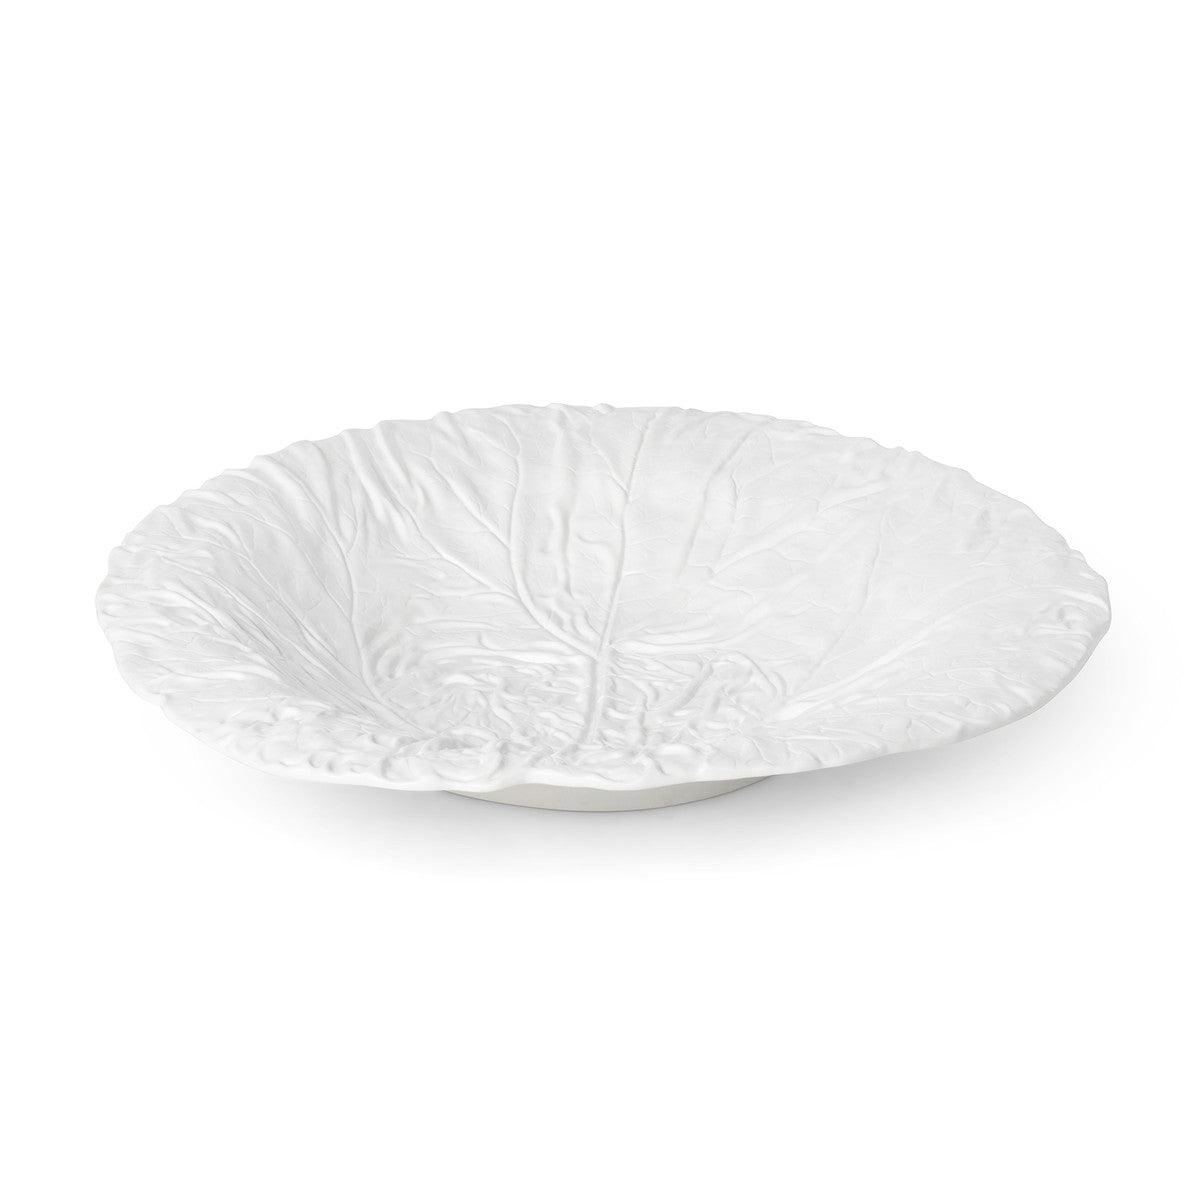 White Cabbage Leaf Ceramic Serving Platter, 20" Dia. - Signastyle Boutique